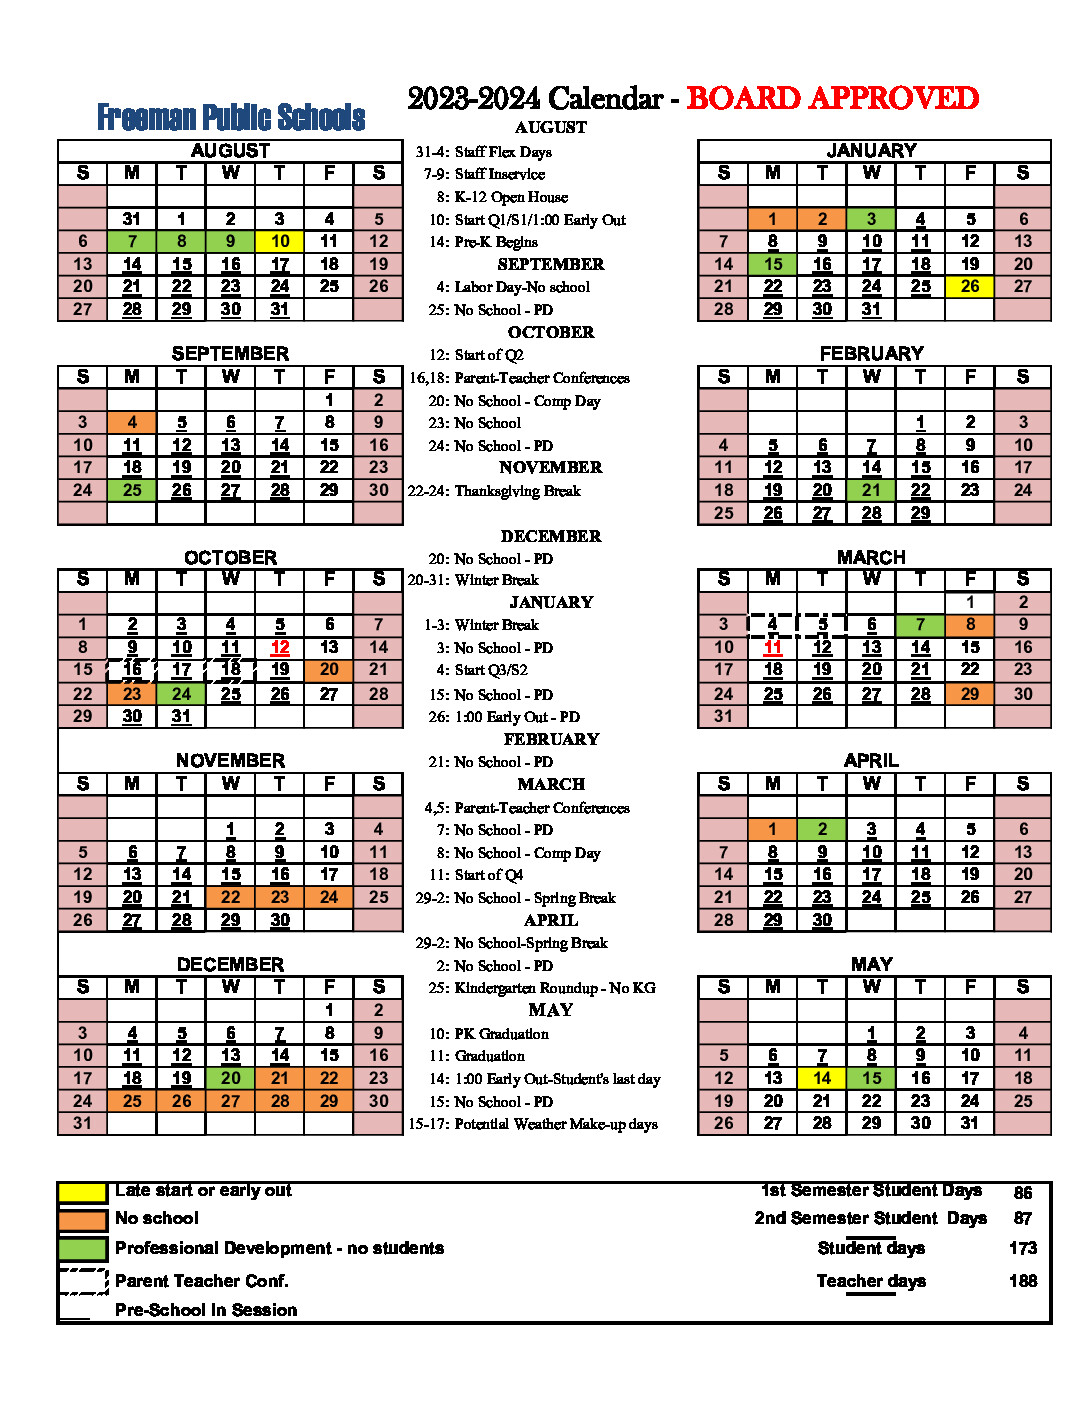 Adams 14 School Calendar 2024 2025 Pdf Cindi Delores